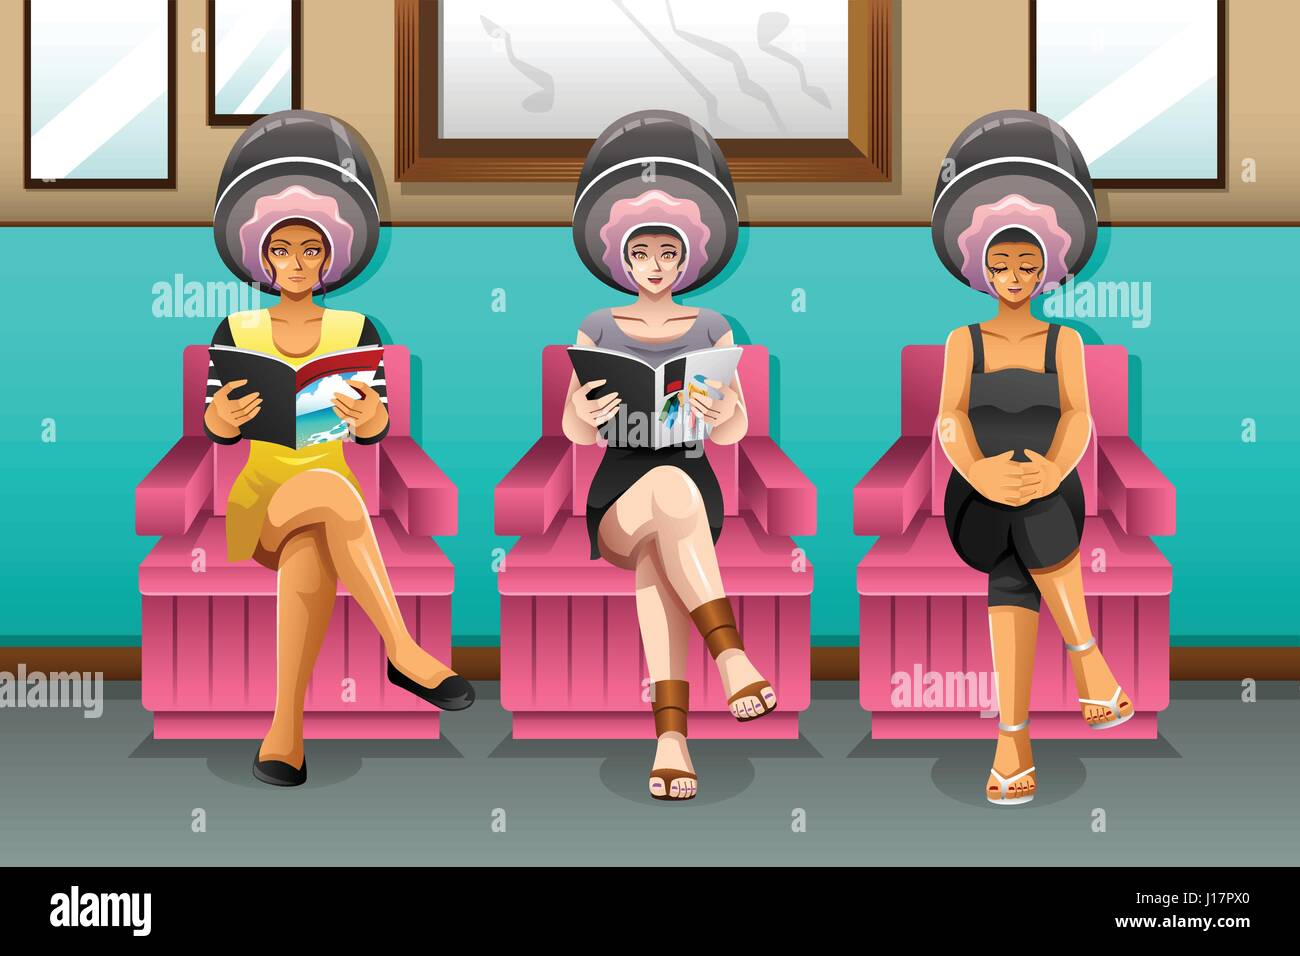 Un vecteur illustration de femmes dans un salon de coiffure Illustration de Vecteur